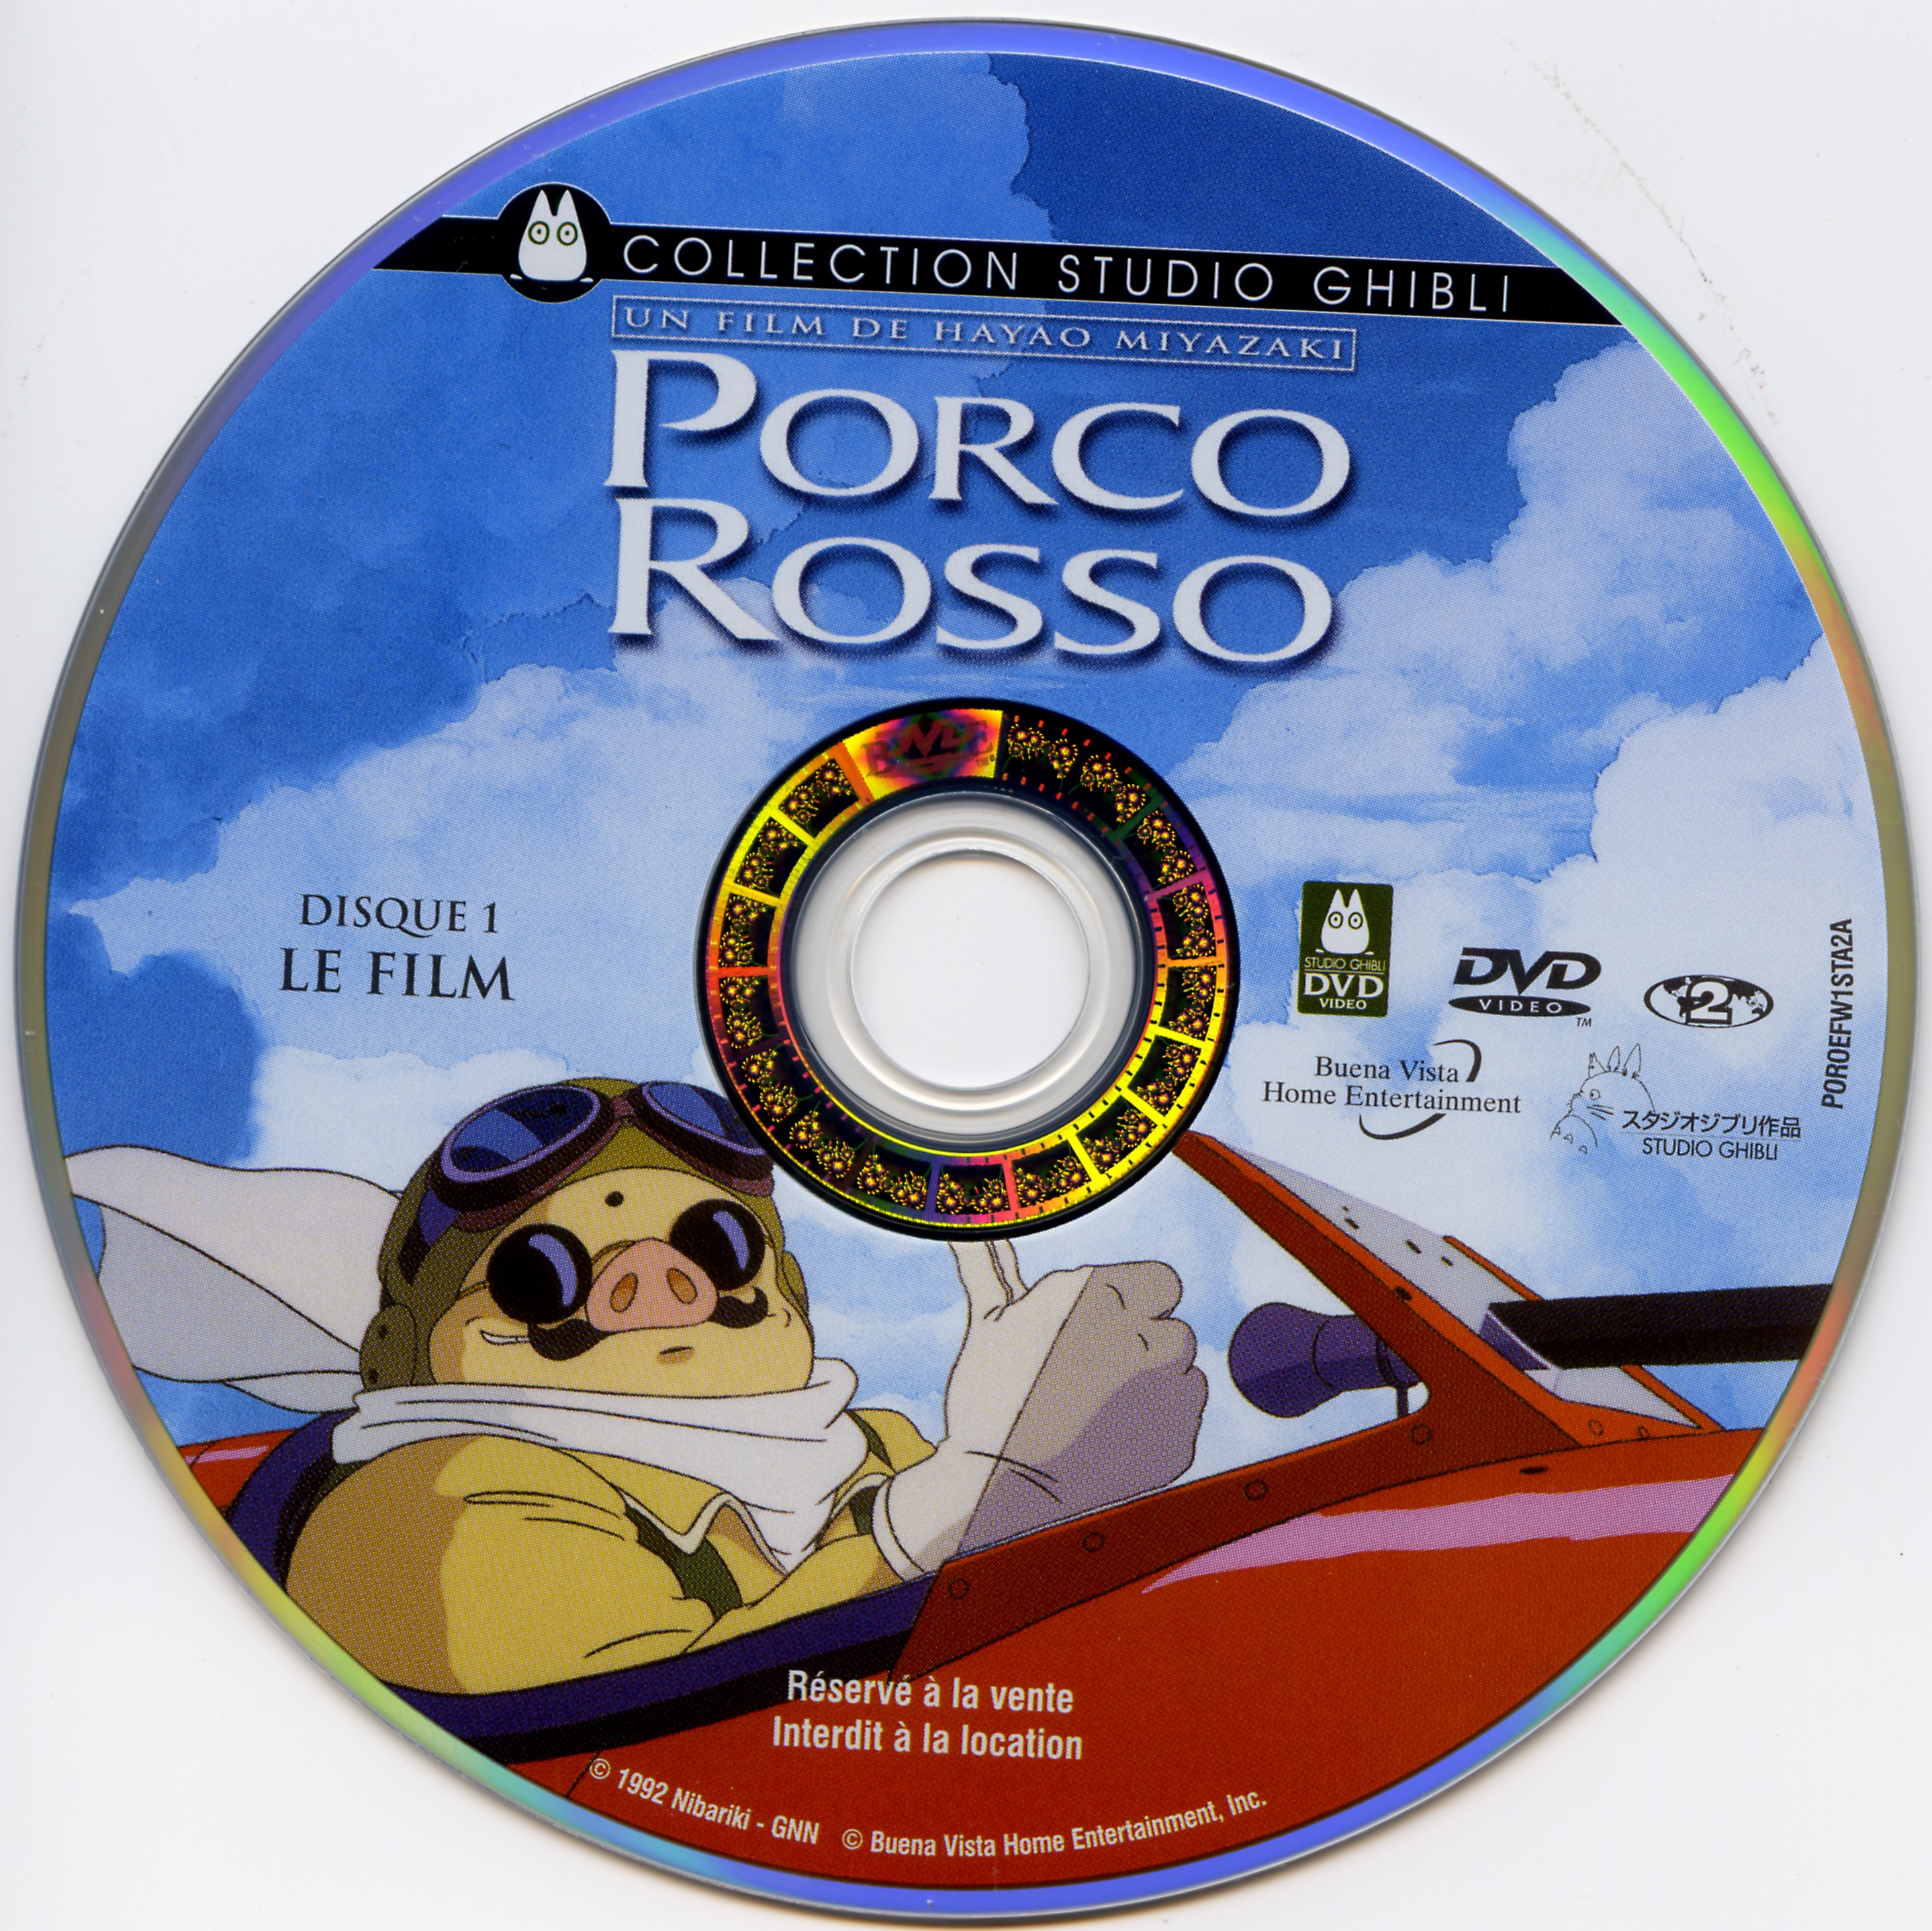 Porco Rosso DISC 1